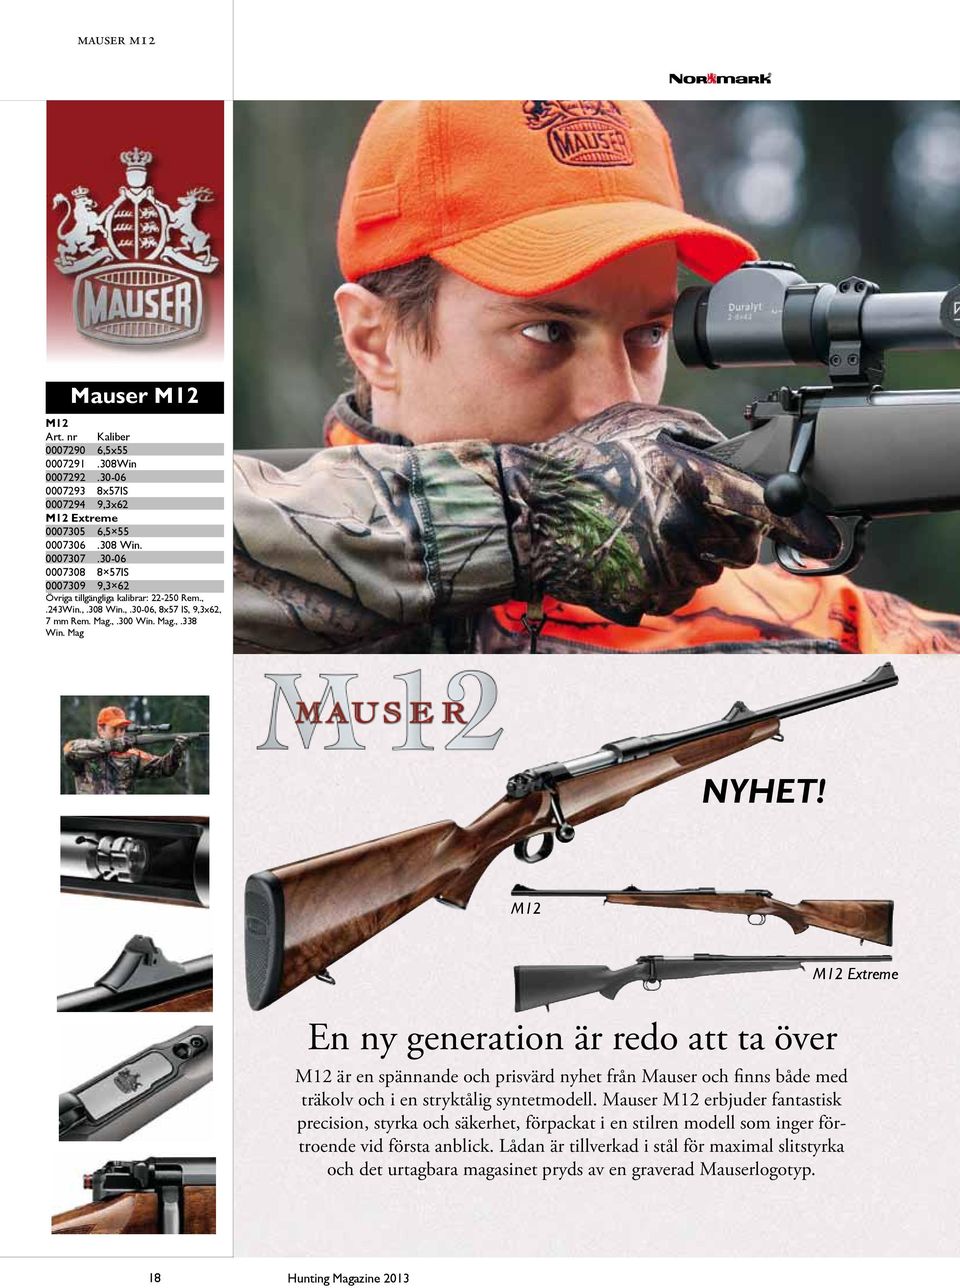 Mag M12 En ny generation är redo att ta över M12 är en spännande och prisvärd nyhet från Mauser och finns både med träkolv och i en stryktålig syntetmodell.